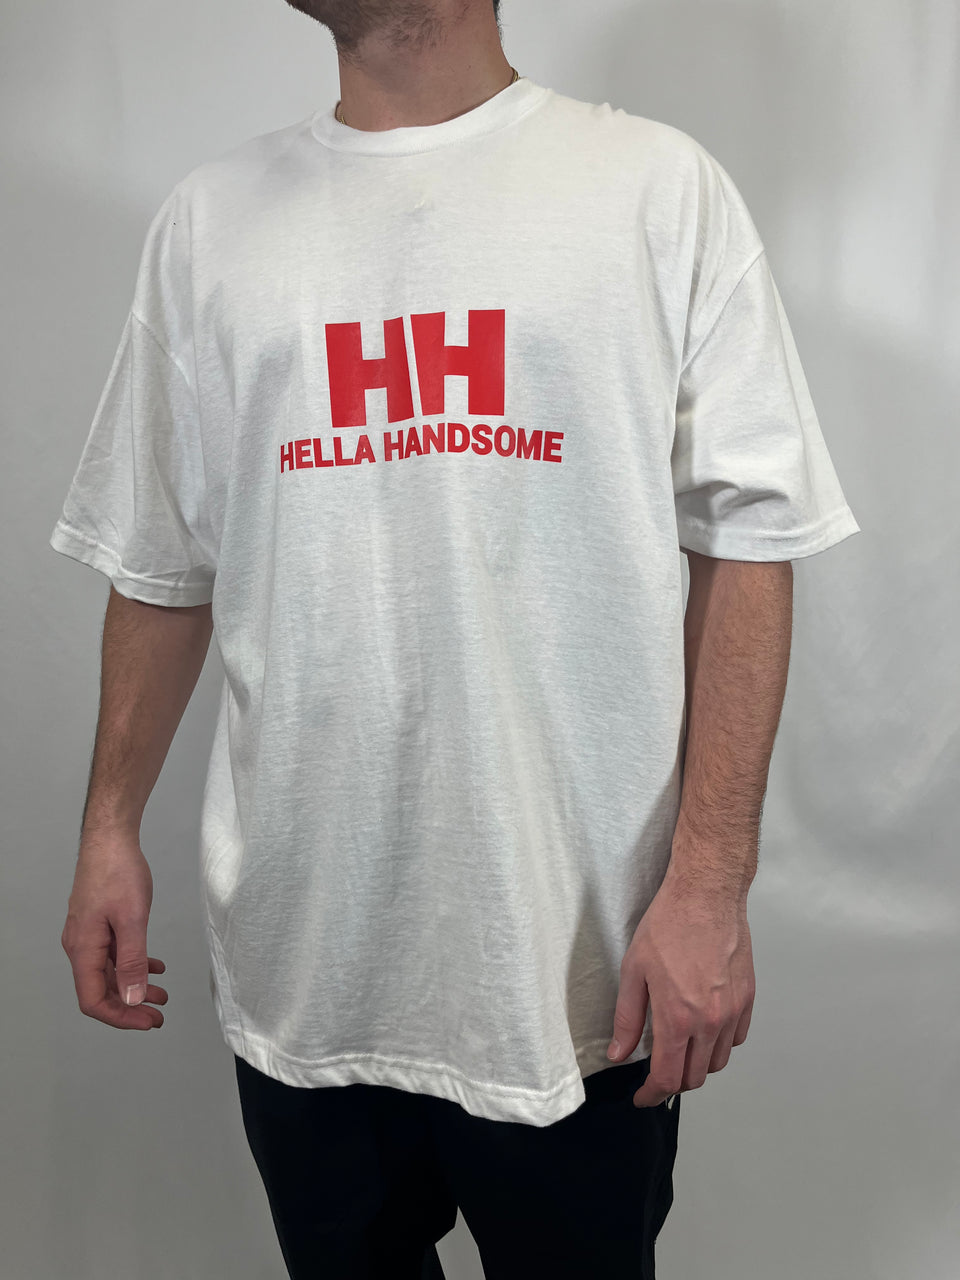 T-Shirt HELLA HANDSOME - White